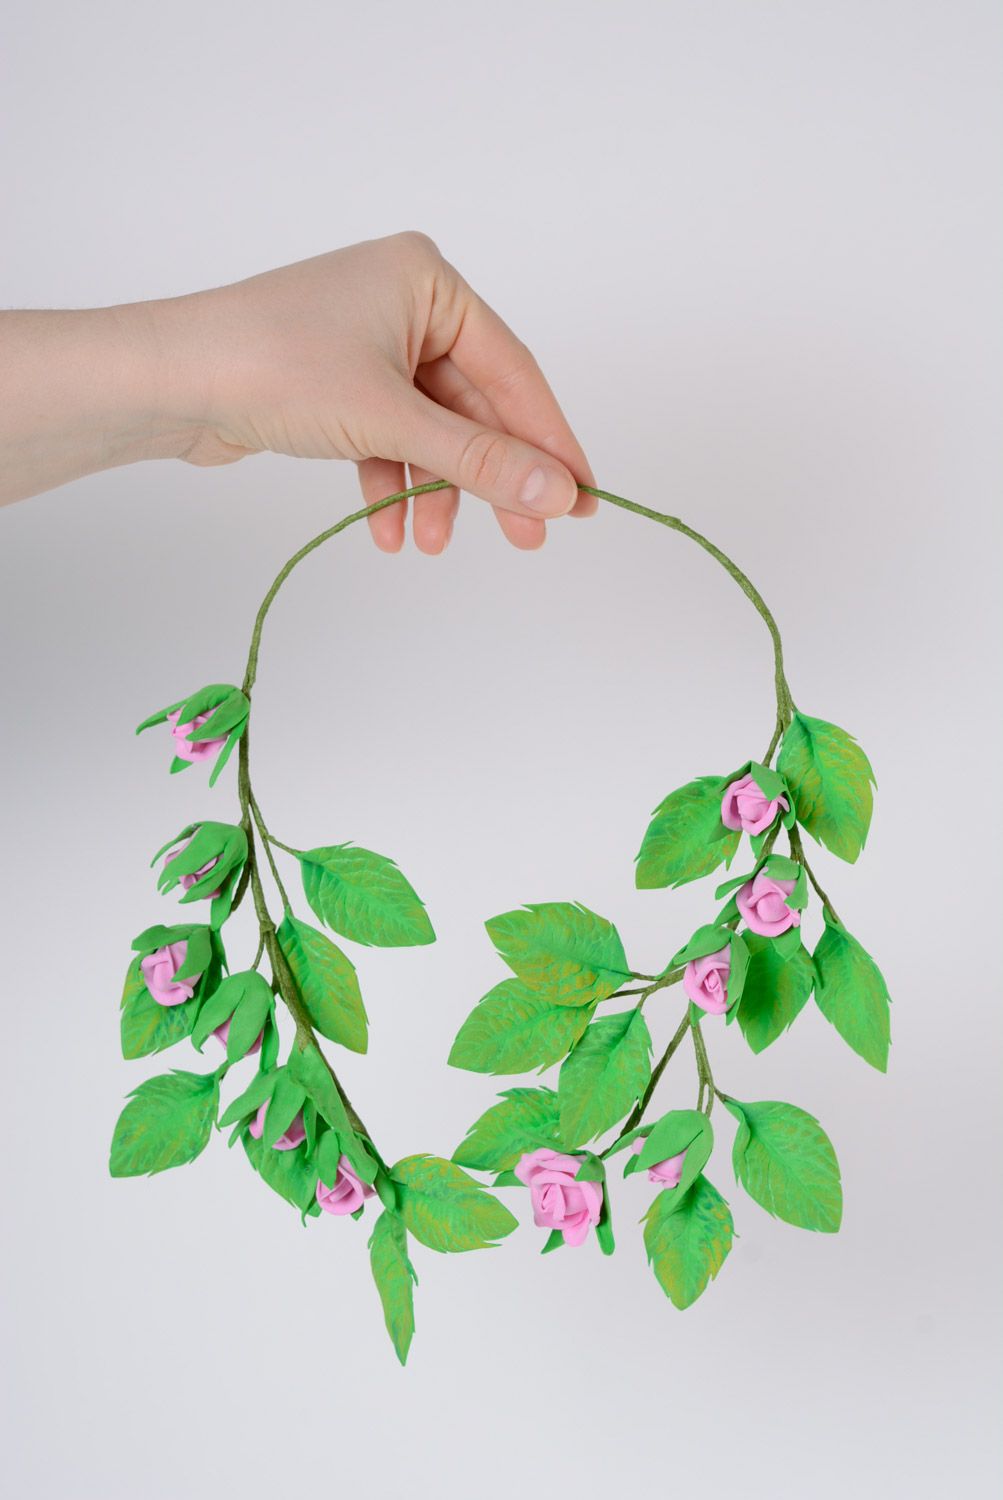 Колье из пластичной замши ручной работы цветочное зеленое с сиреневыми розами фото 3